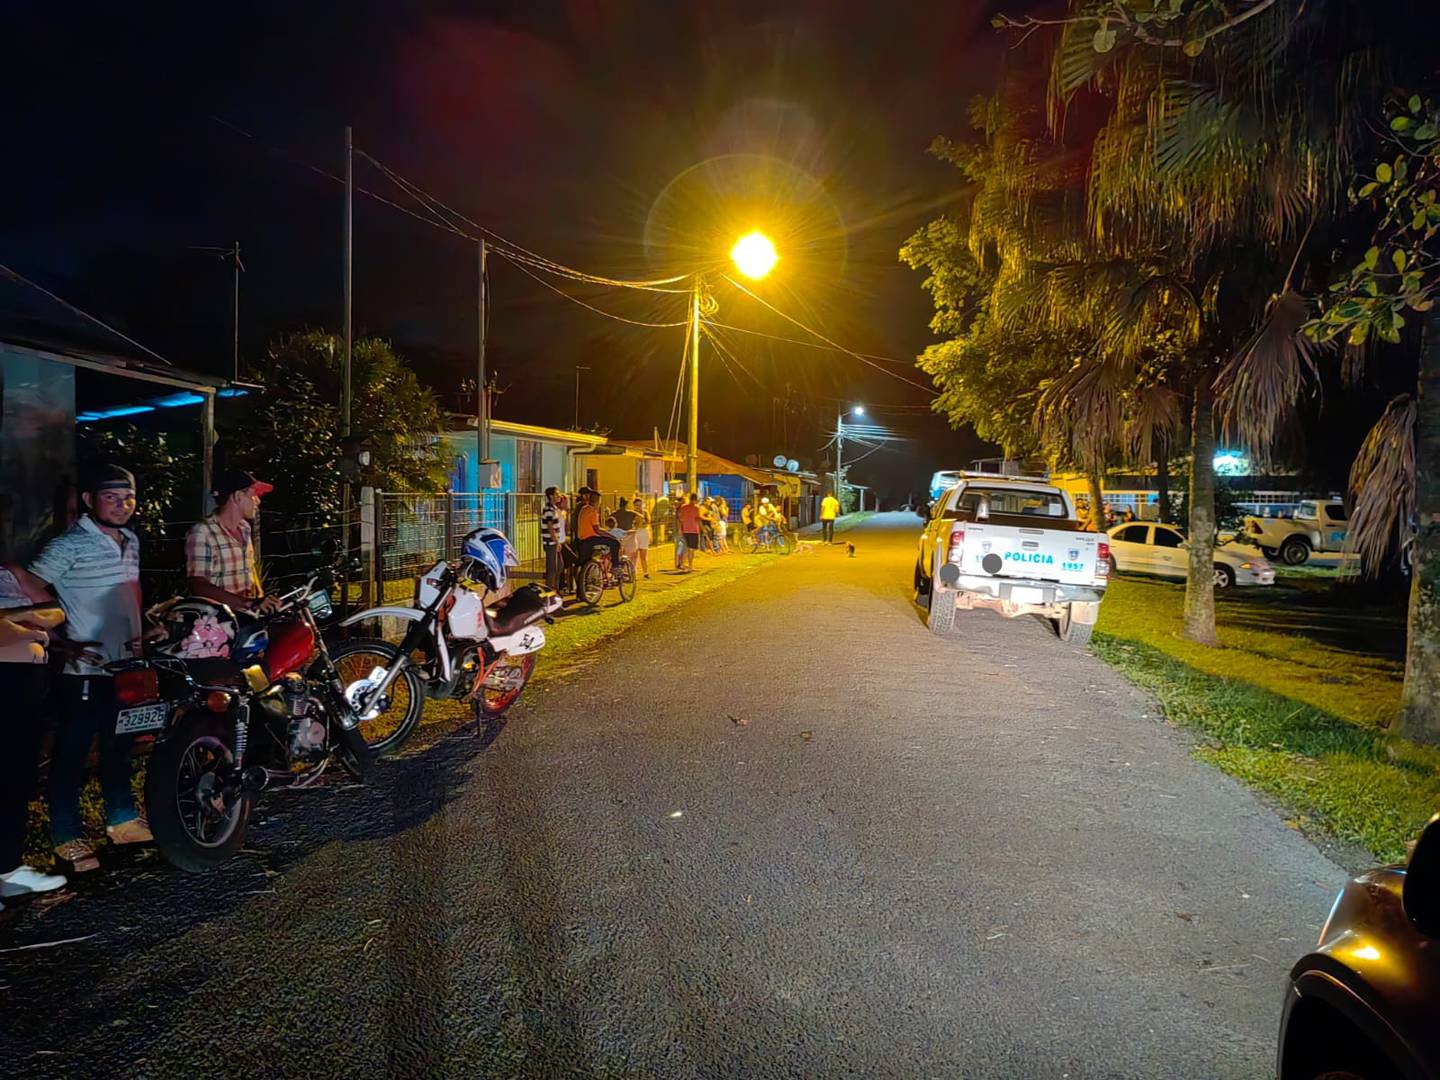 La policía cerró el perímetro de la zona donde ocurrió la balacer que dejó tres heridos graves y un muerto. Foto: Reiner  Montero.